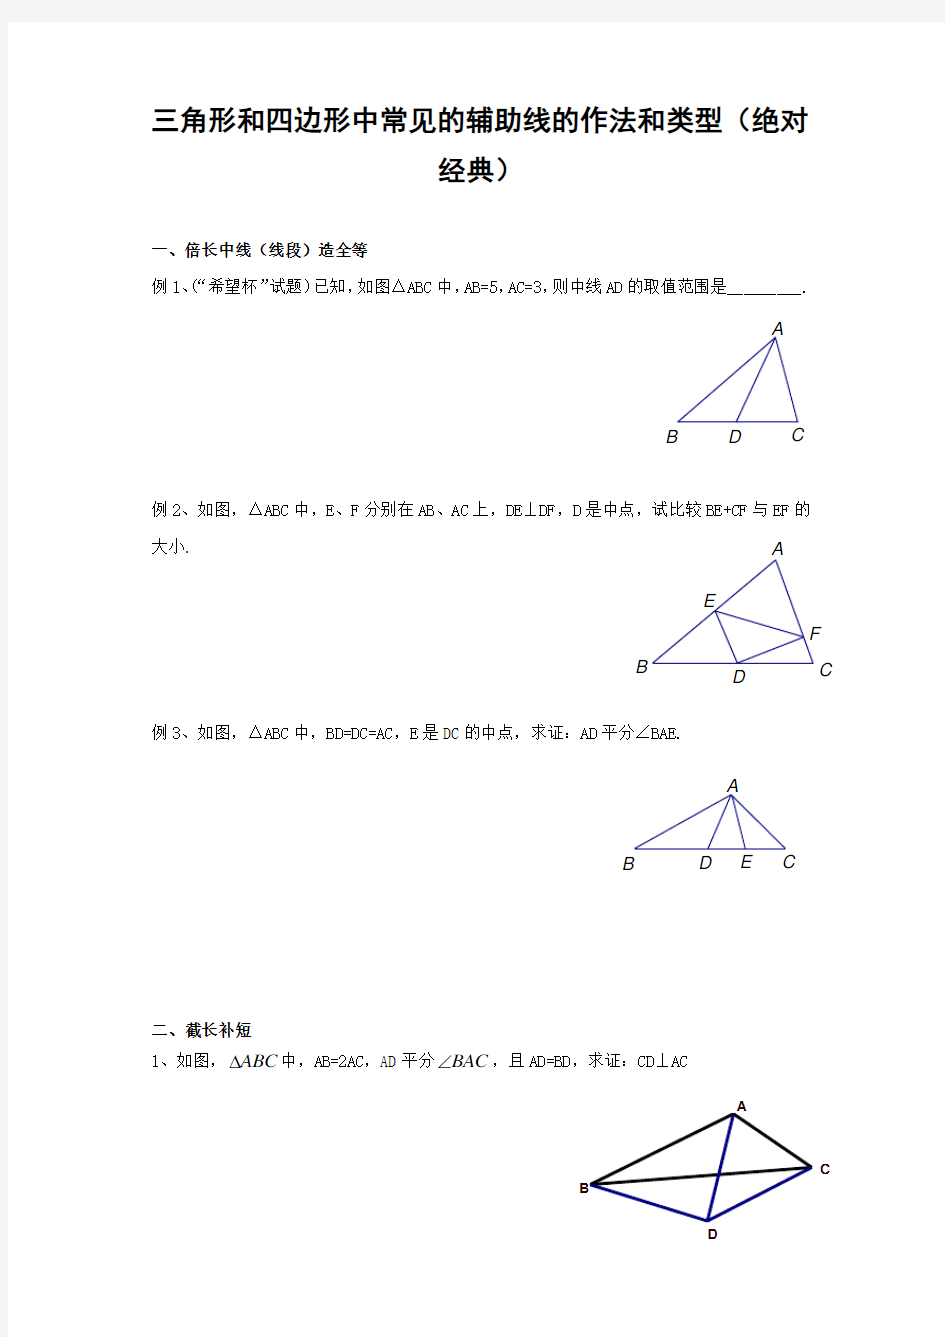 三角形和四边形中常见的辅助线的作法和类型(绝对经典)